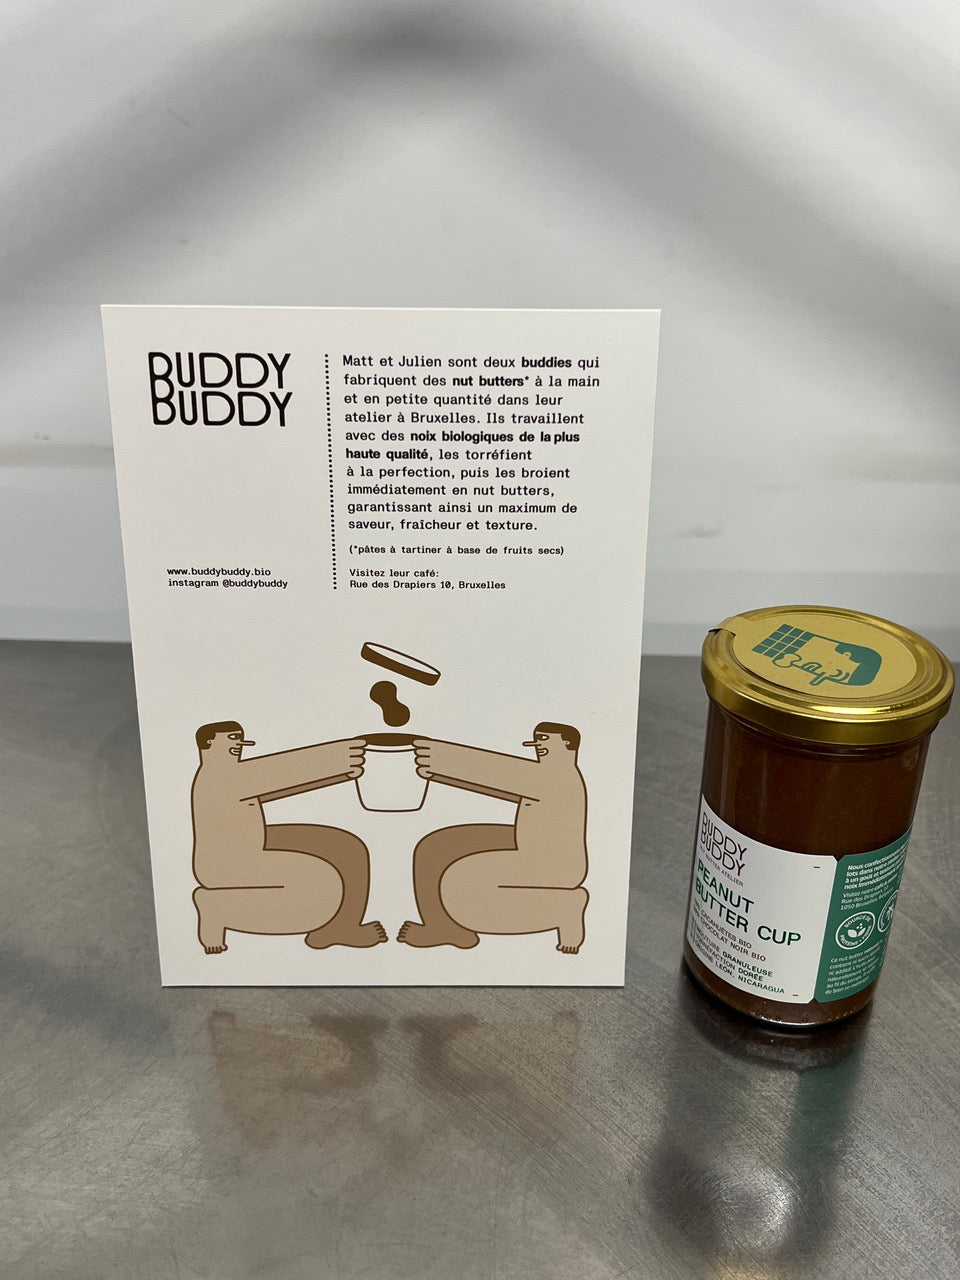 Buddy Buddy -- Plv imprimée pour mise en avant de gamme